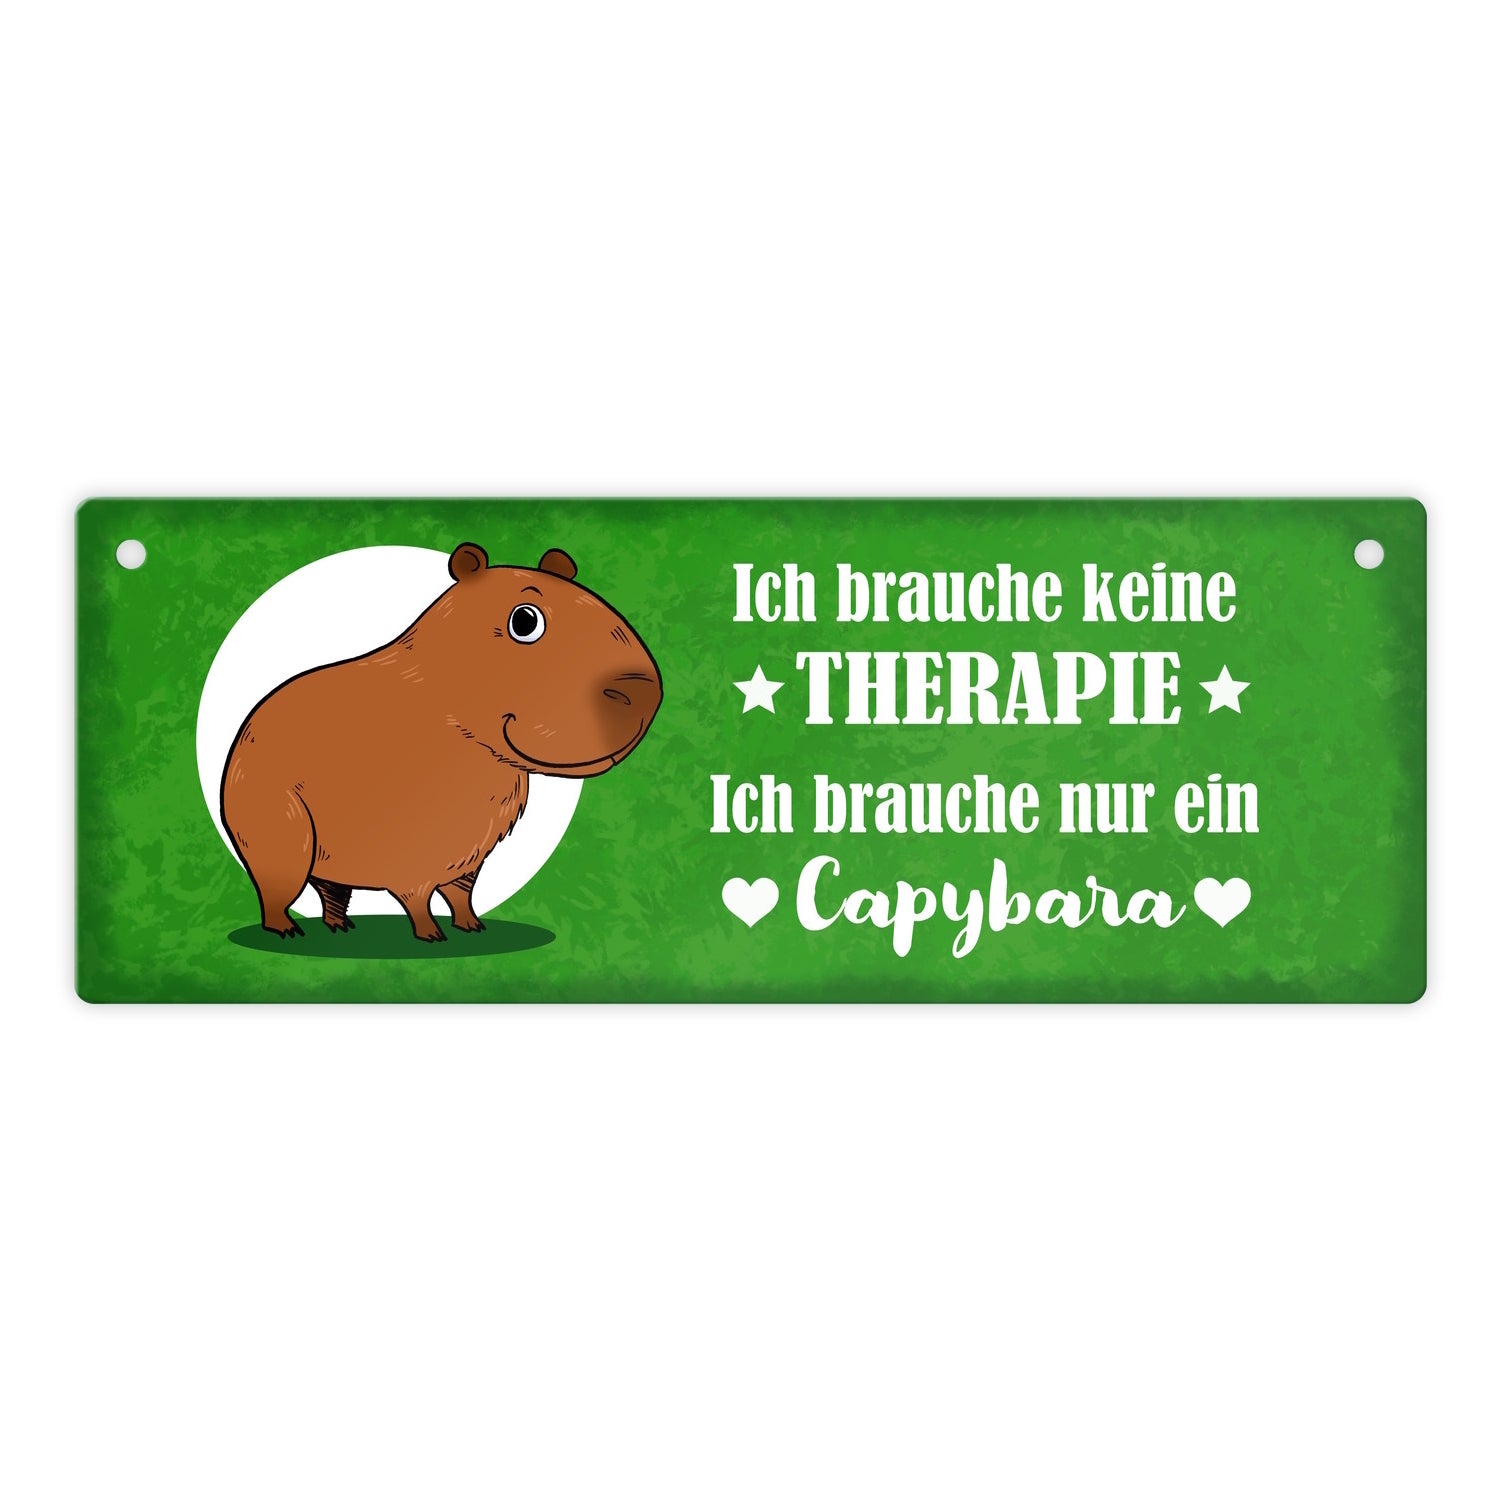 Capybara Metallschild: Kaufen Sie jetzt und machen Sie jemanden